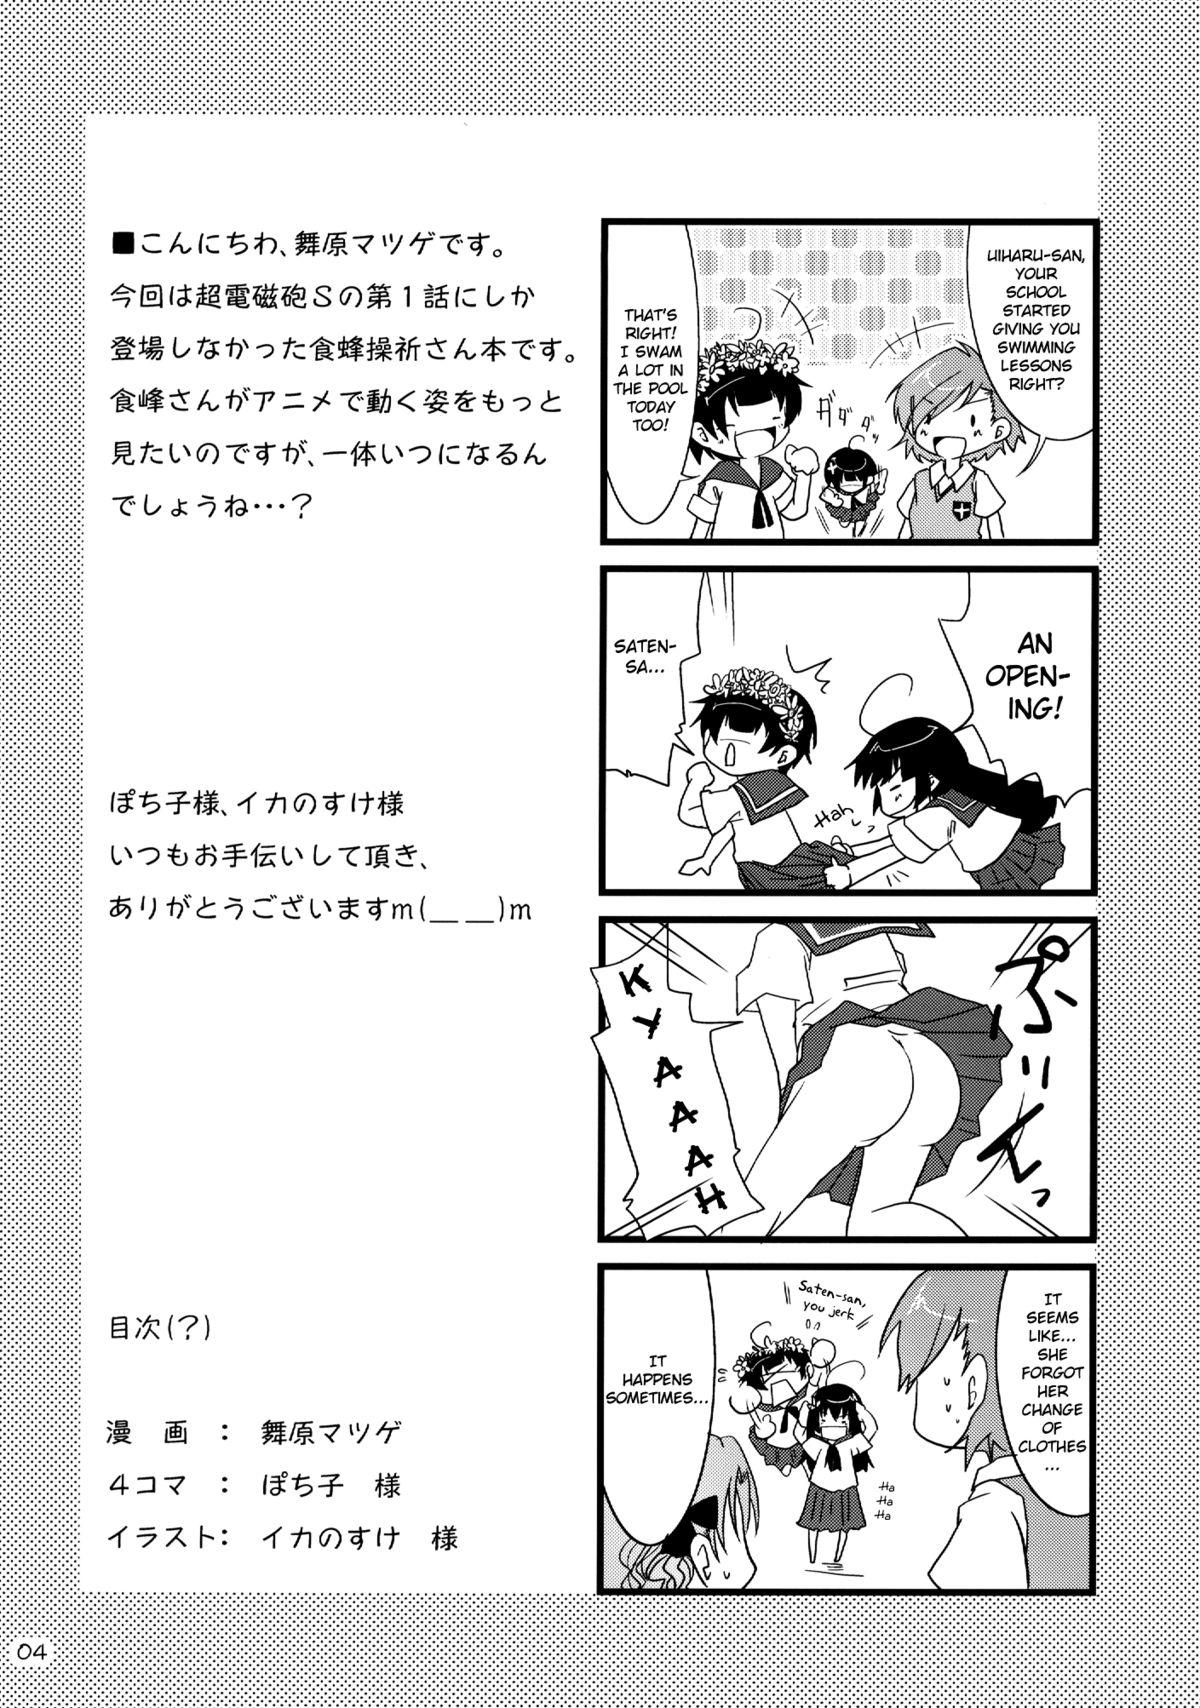 Deflowered Toaru Kairaku no Enkaku Sousa - Toaru kagaku no railgun Hiddencam - Page 4